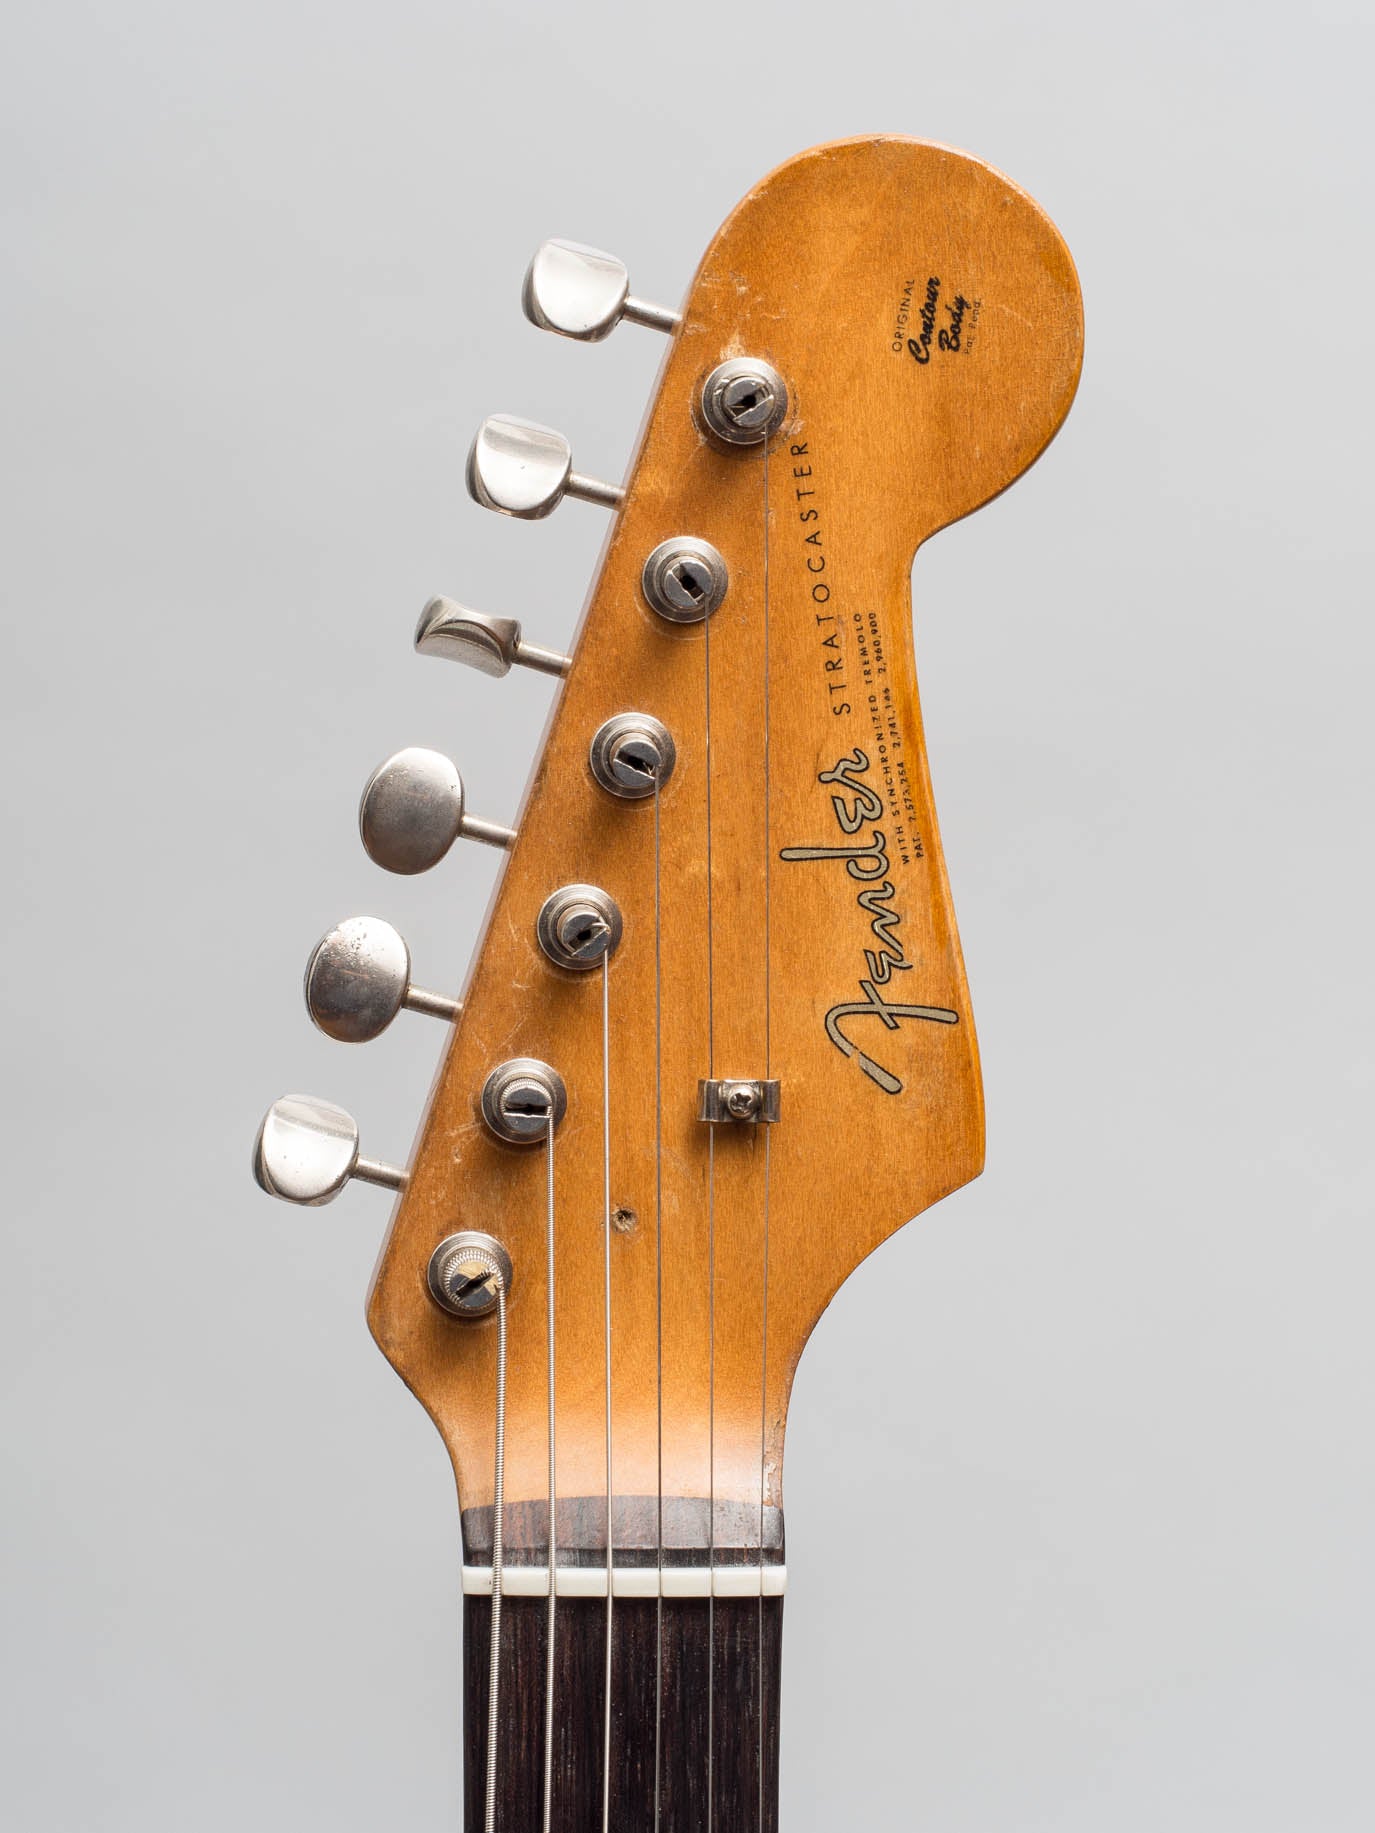 1960 Fender Stratocaster